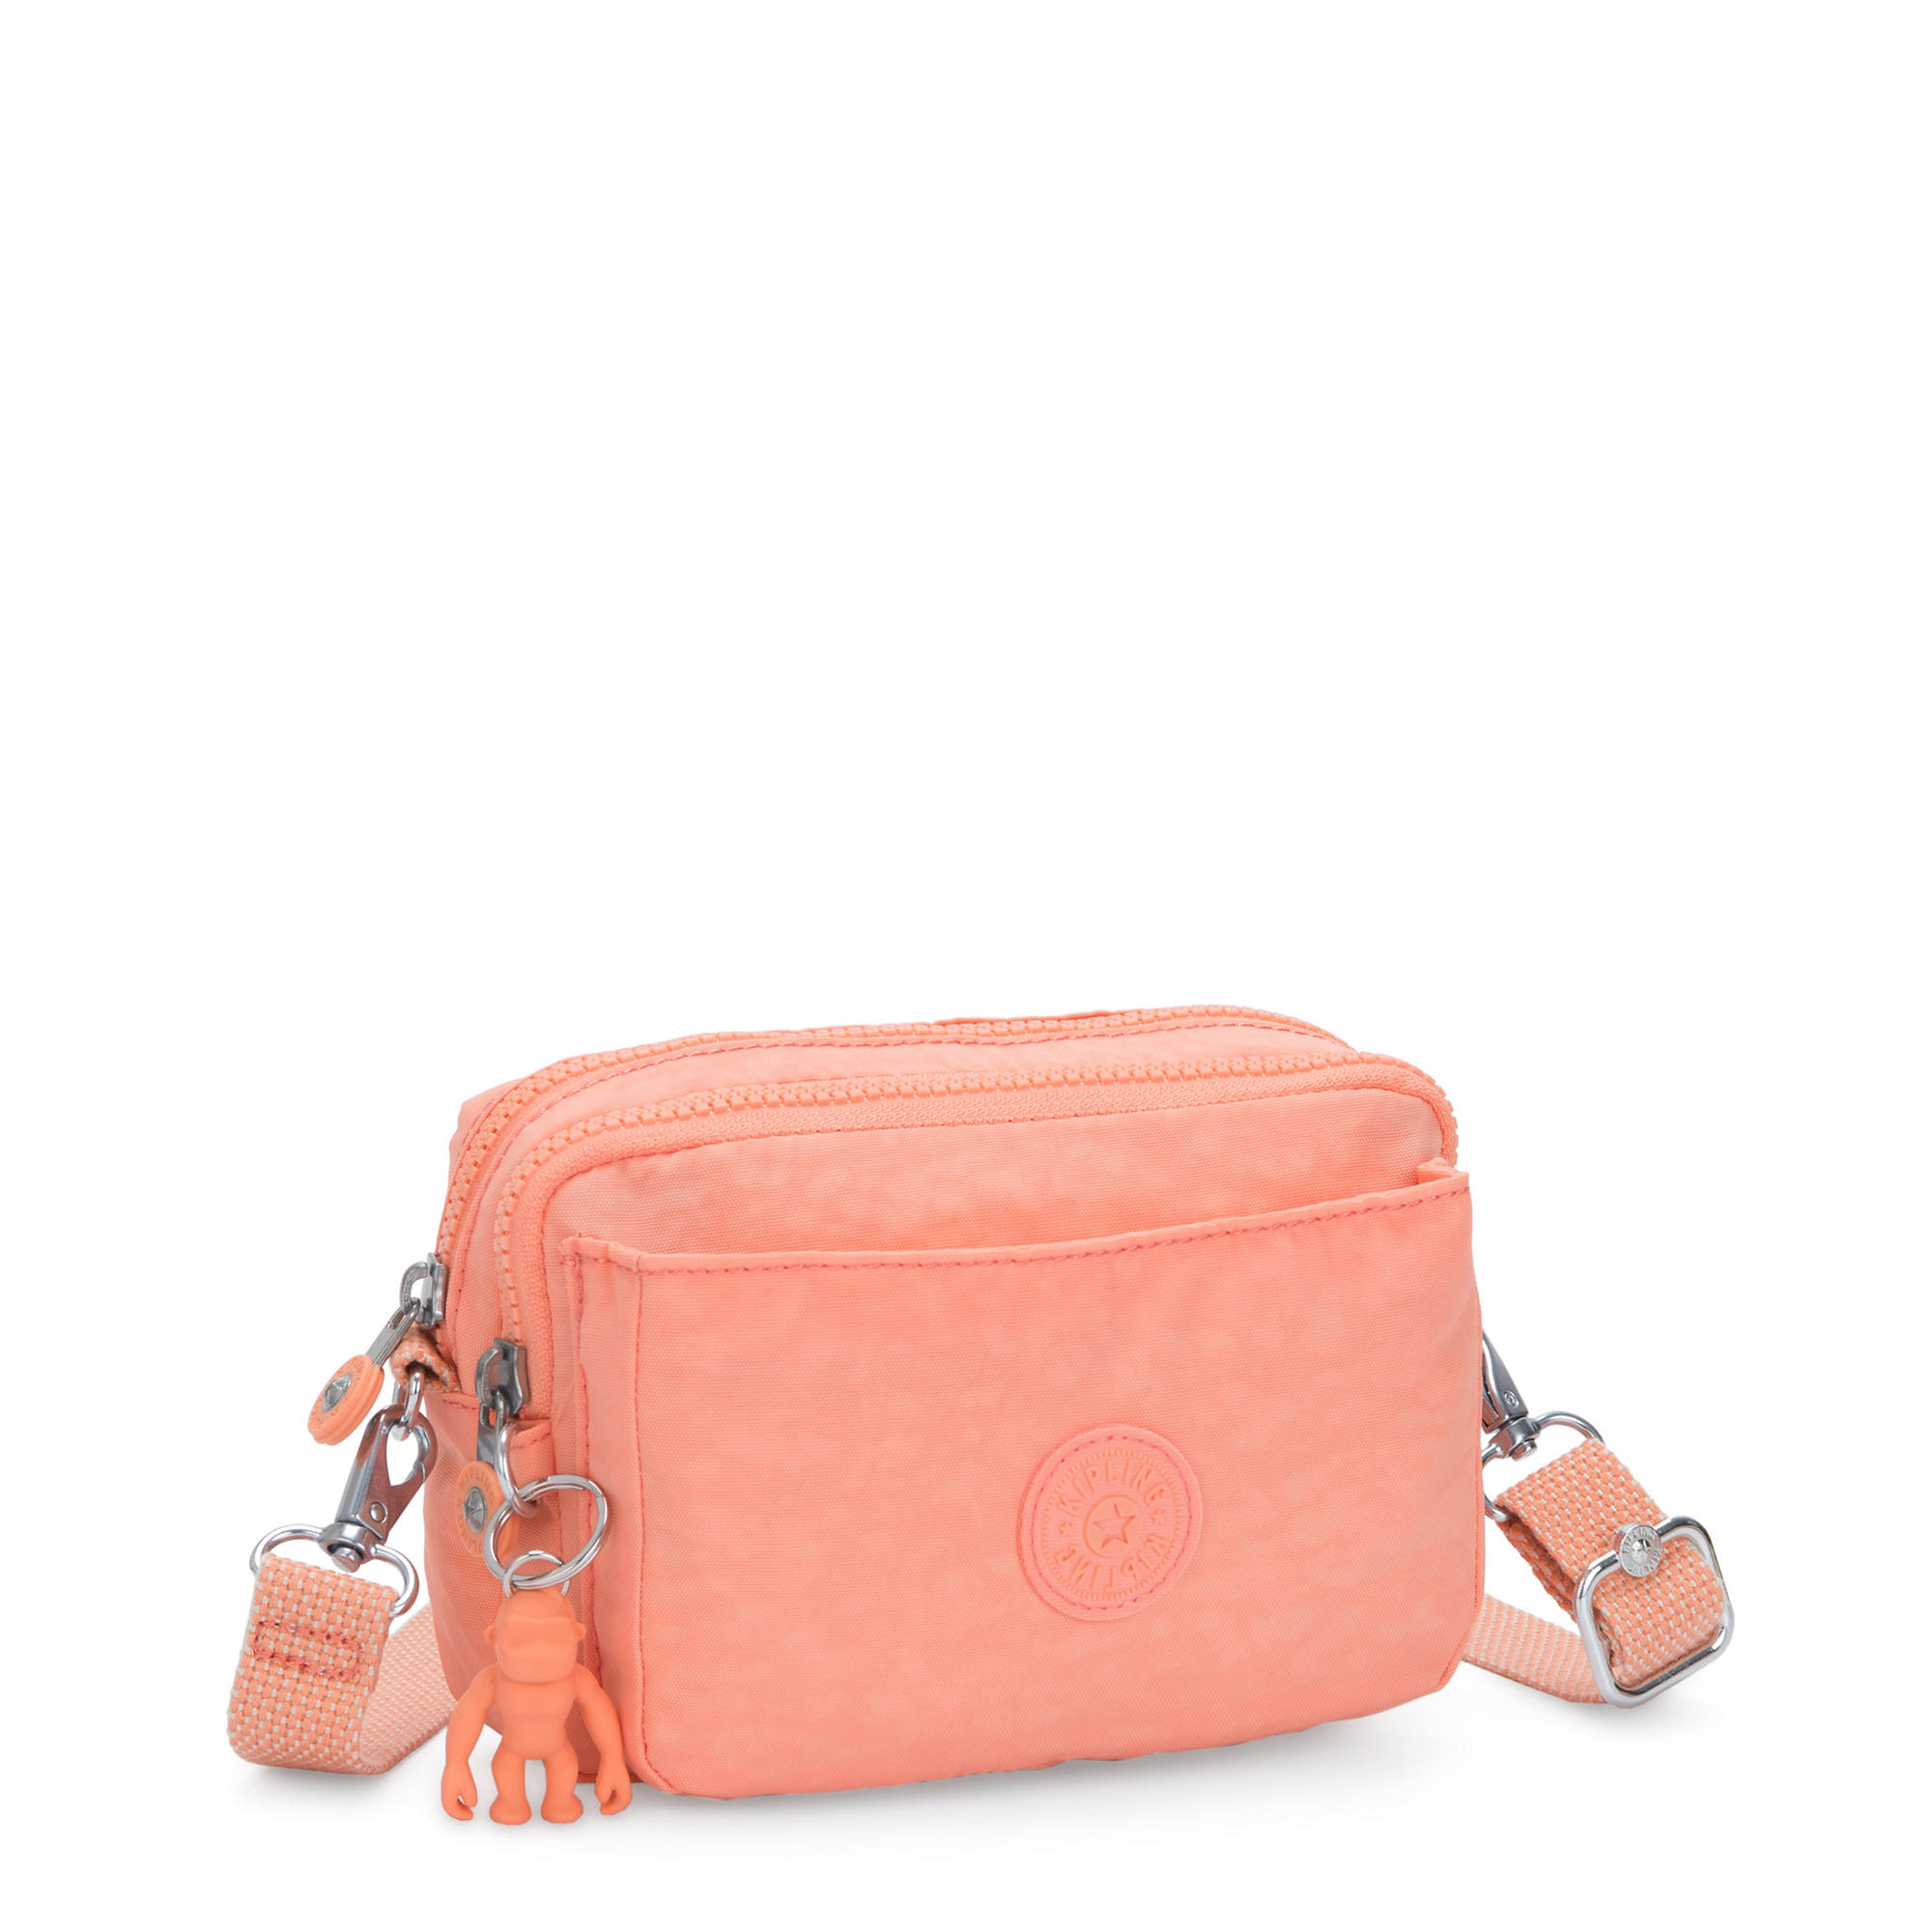 Kipling Abanu Multi Convertible Crossbody Bag | eBay